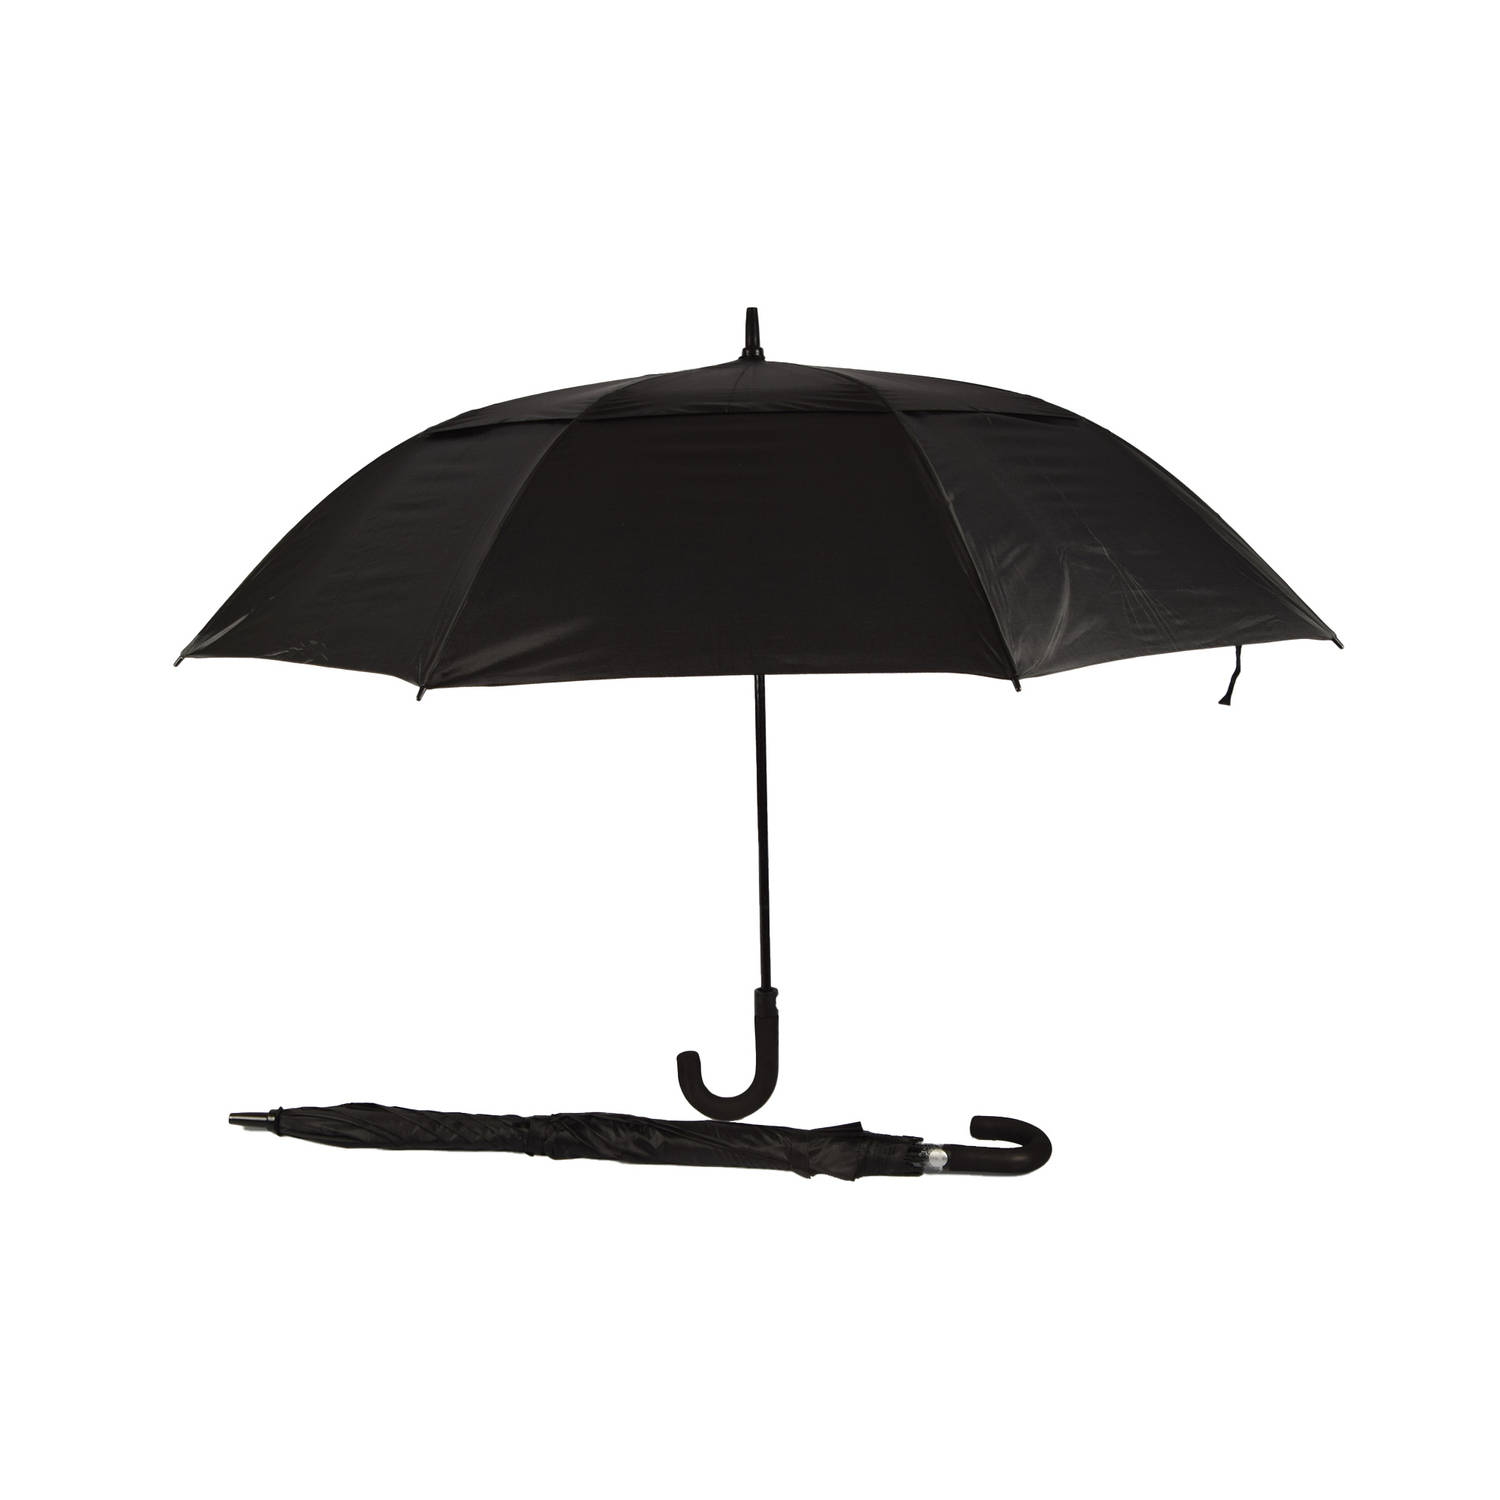 Discountershop Set van 2 Automatische Windproof Paraplu's - Opvouwbaar met Beschermhoes - Zwart - 100cm Lengte - 130cm Diameter - Inclusief Paraplutas met Handgreep